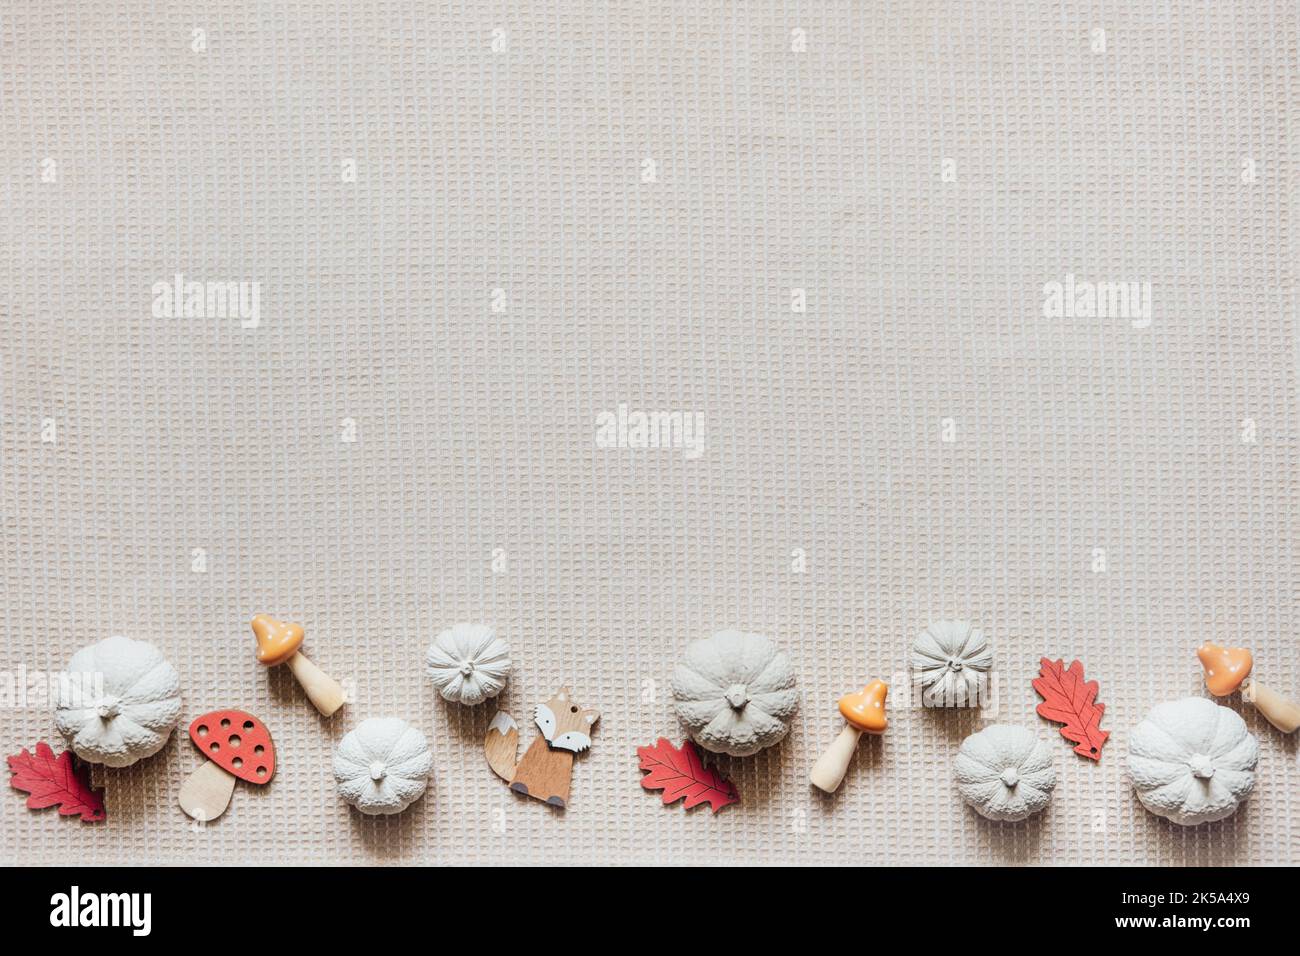 Herbst kreative Handwerk Hintergrund mit dekorativen Ton Kürbisse und Holz Herbstblätter. Dekorative Kürbisse flach legen auf Naturstoff-Hintergrund Stockfoto